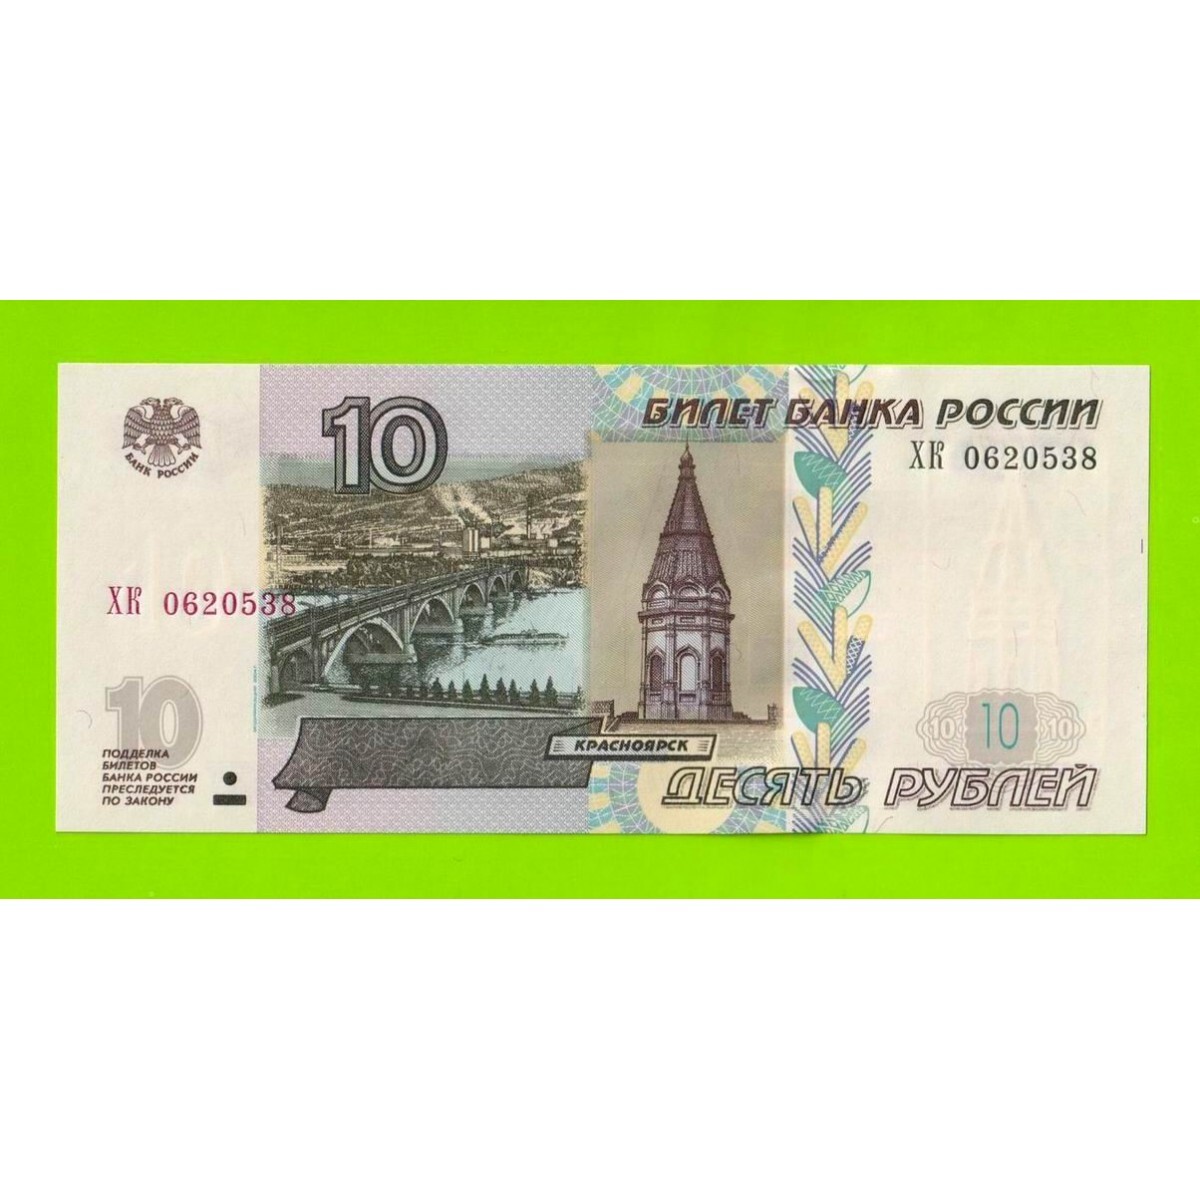 23 в российских рублях. Банкноты России 10 рублей. 10 Рублей 1997 модификация 2004. 10 Рублей банкнота. 10 Рублей бумажные.